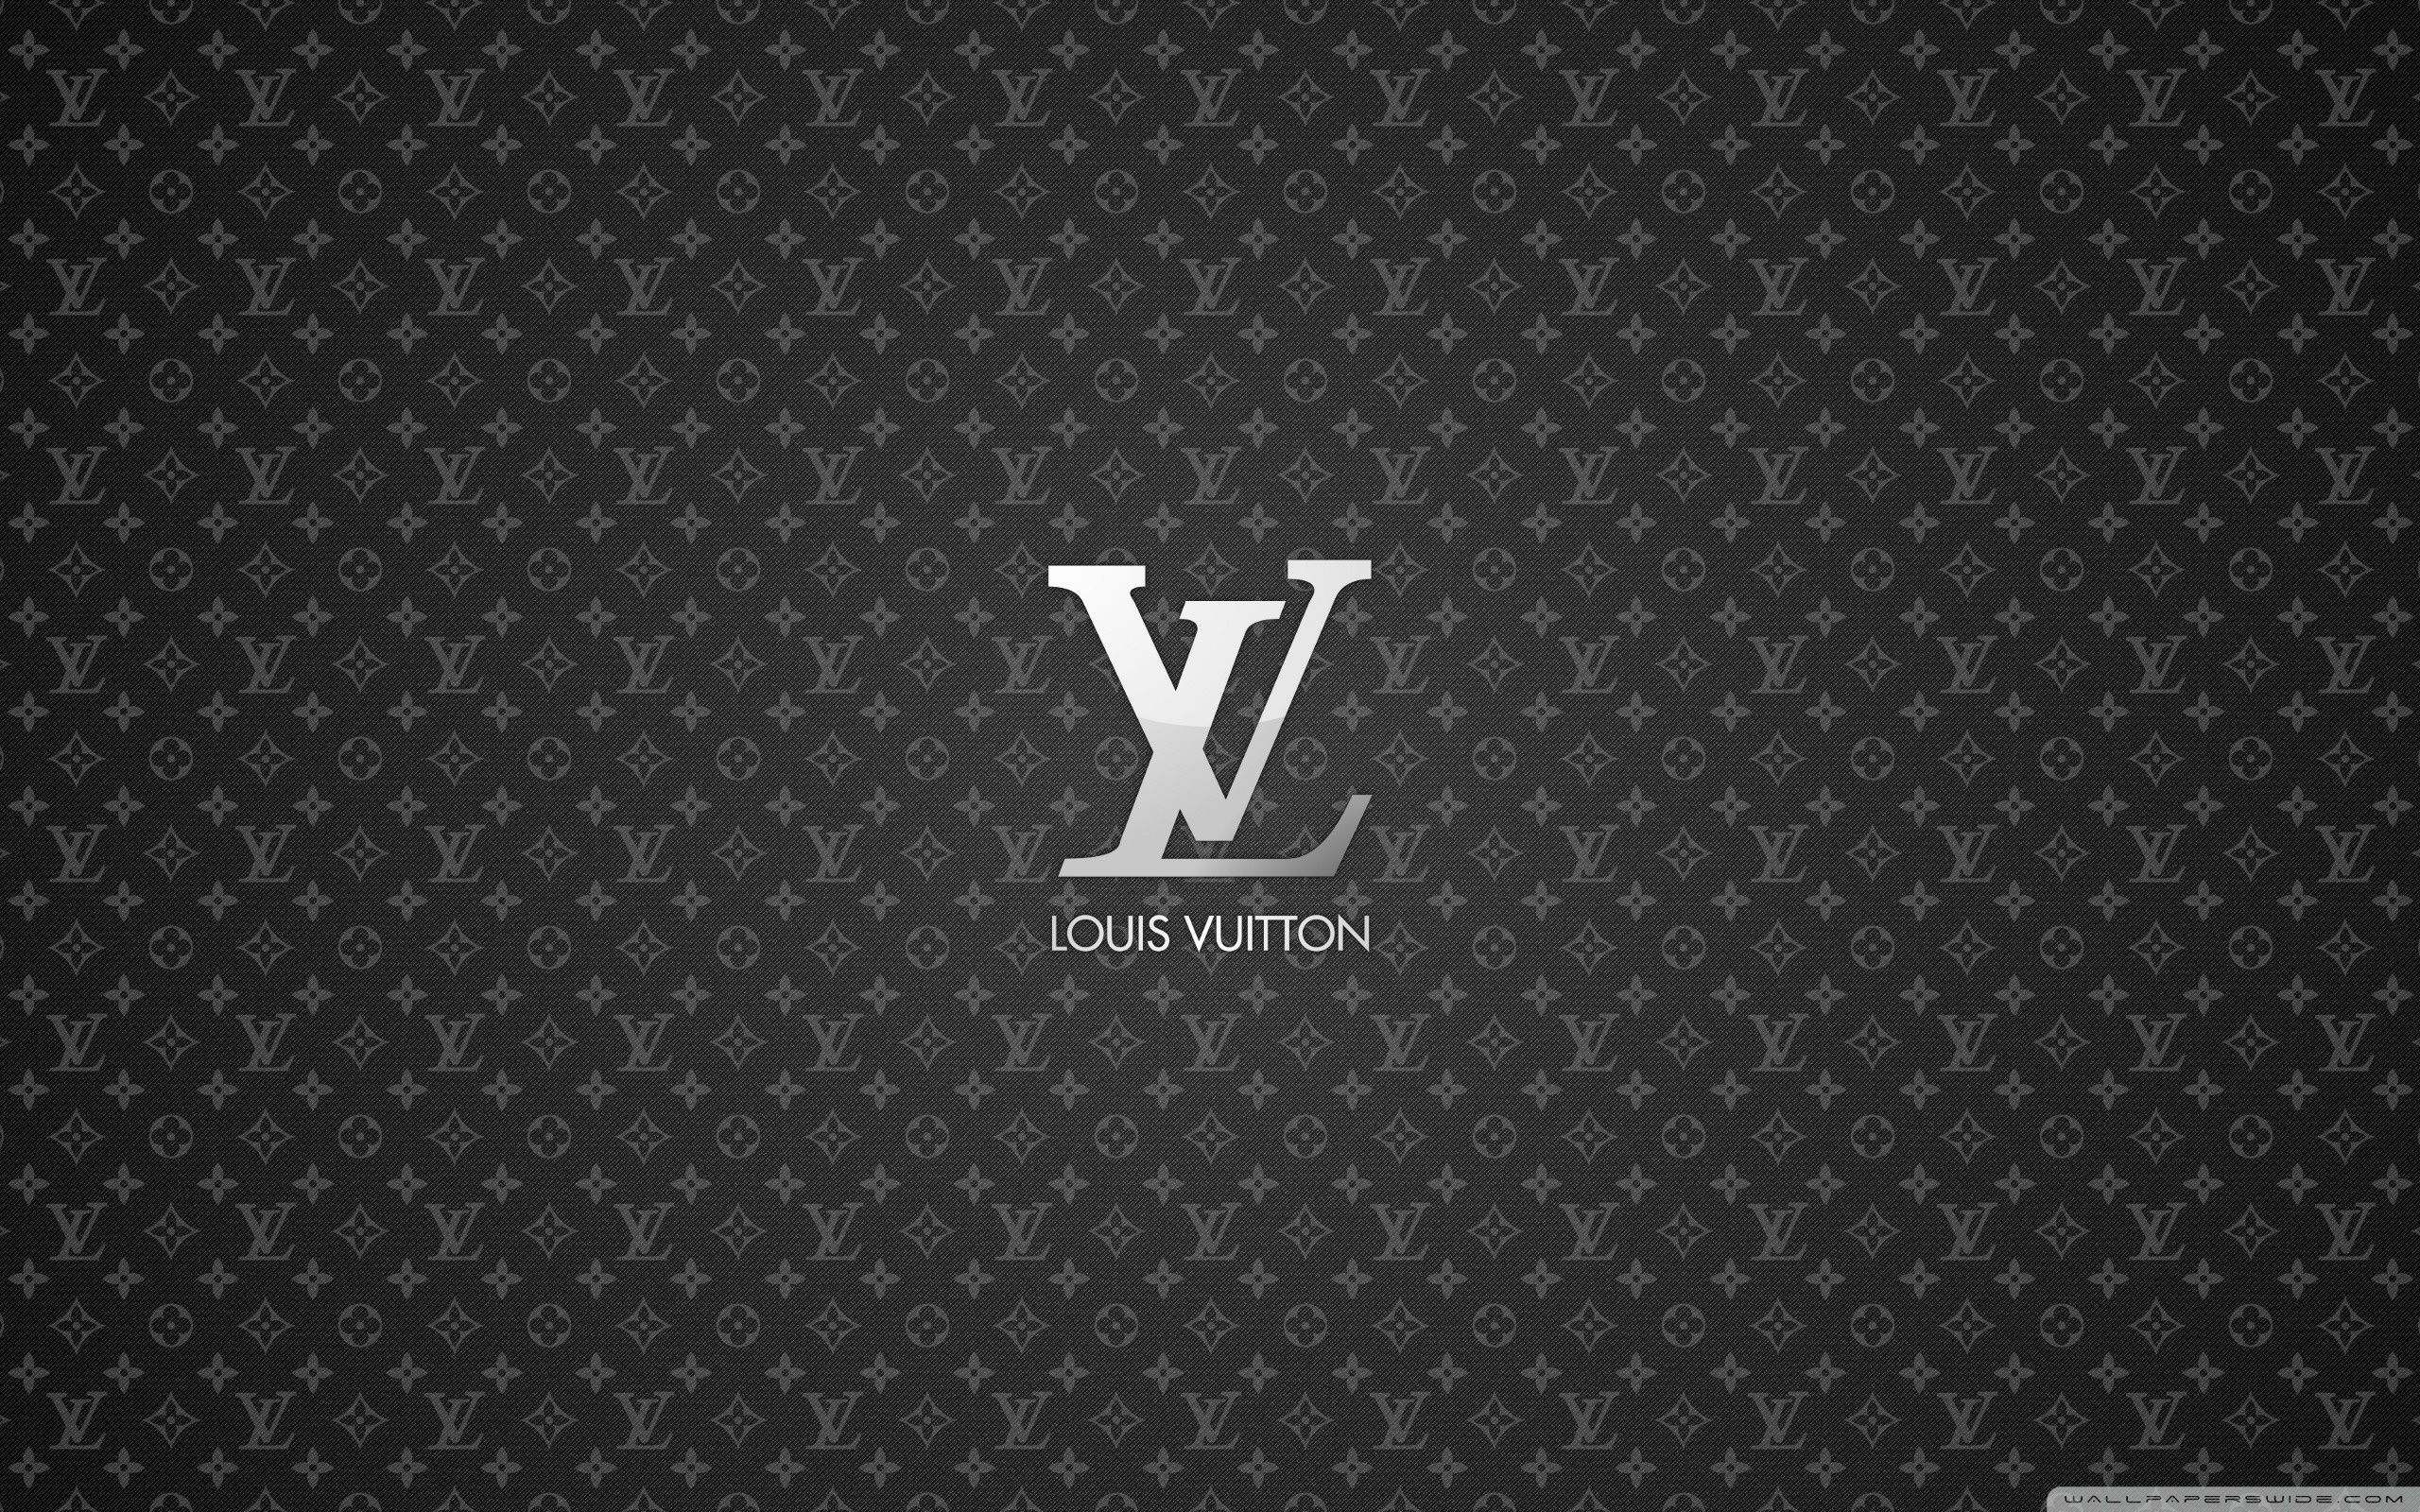 Louis Vuitton HD desktop wallpapers High Definition